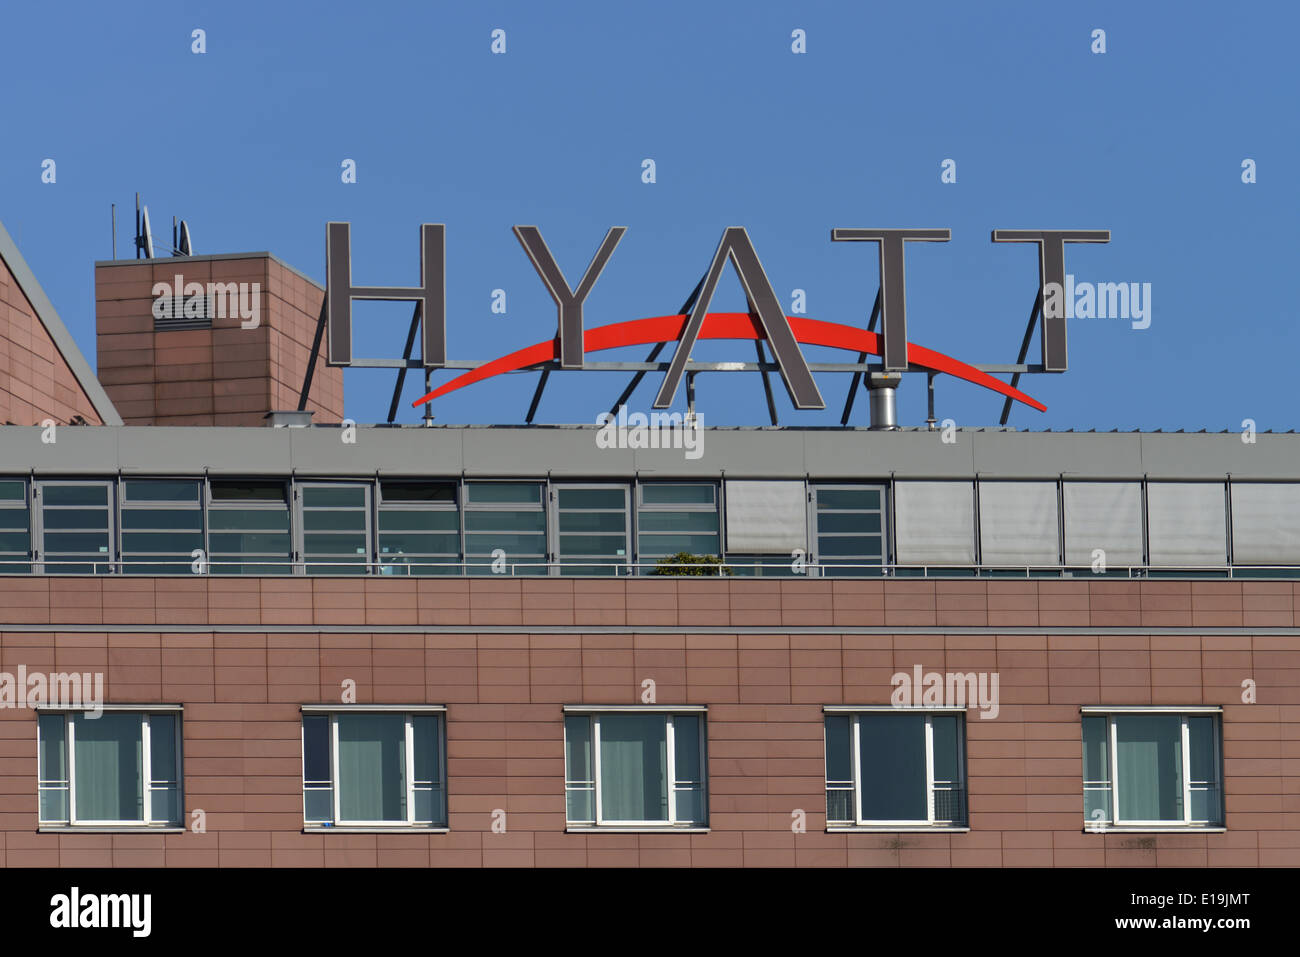 Hyatt-Hotel, Potsdamer Platz, Tiergarten, Berlin, Deutschland Banque D'Images